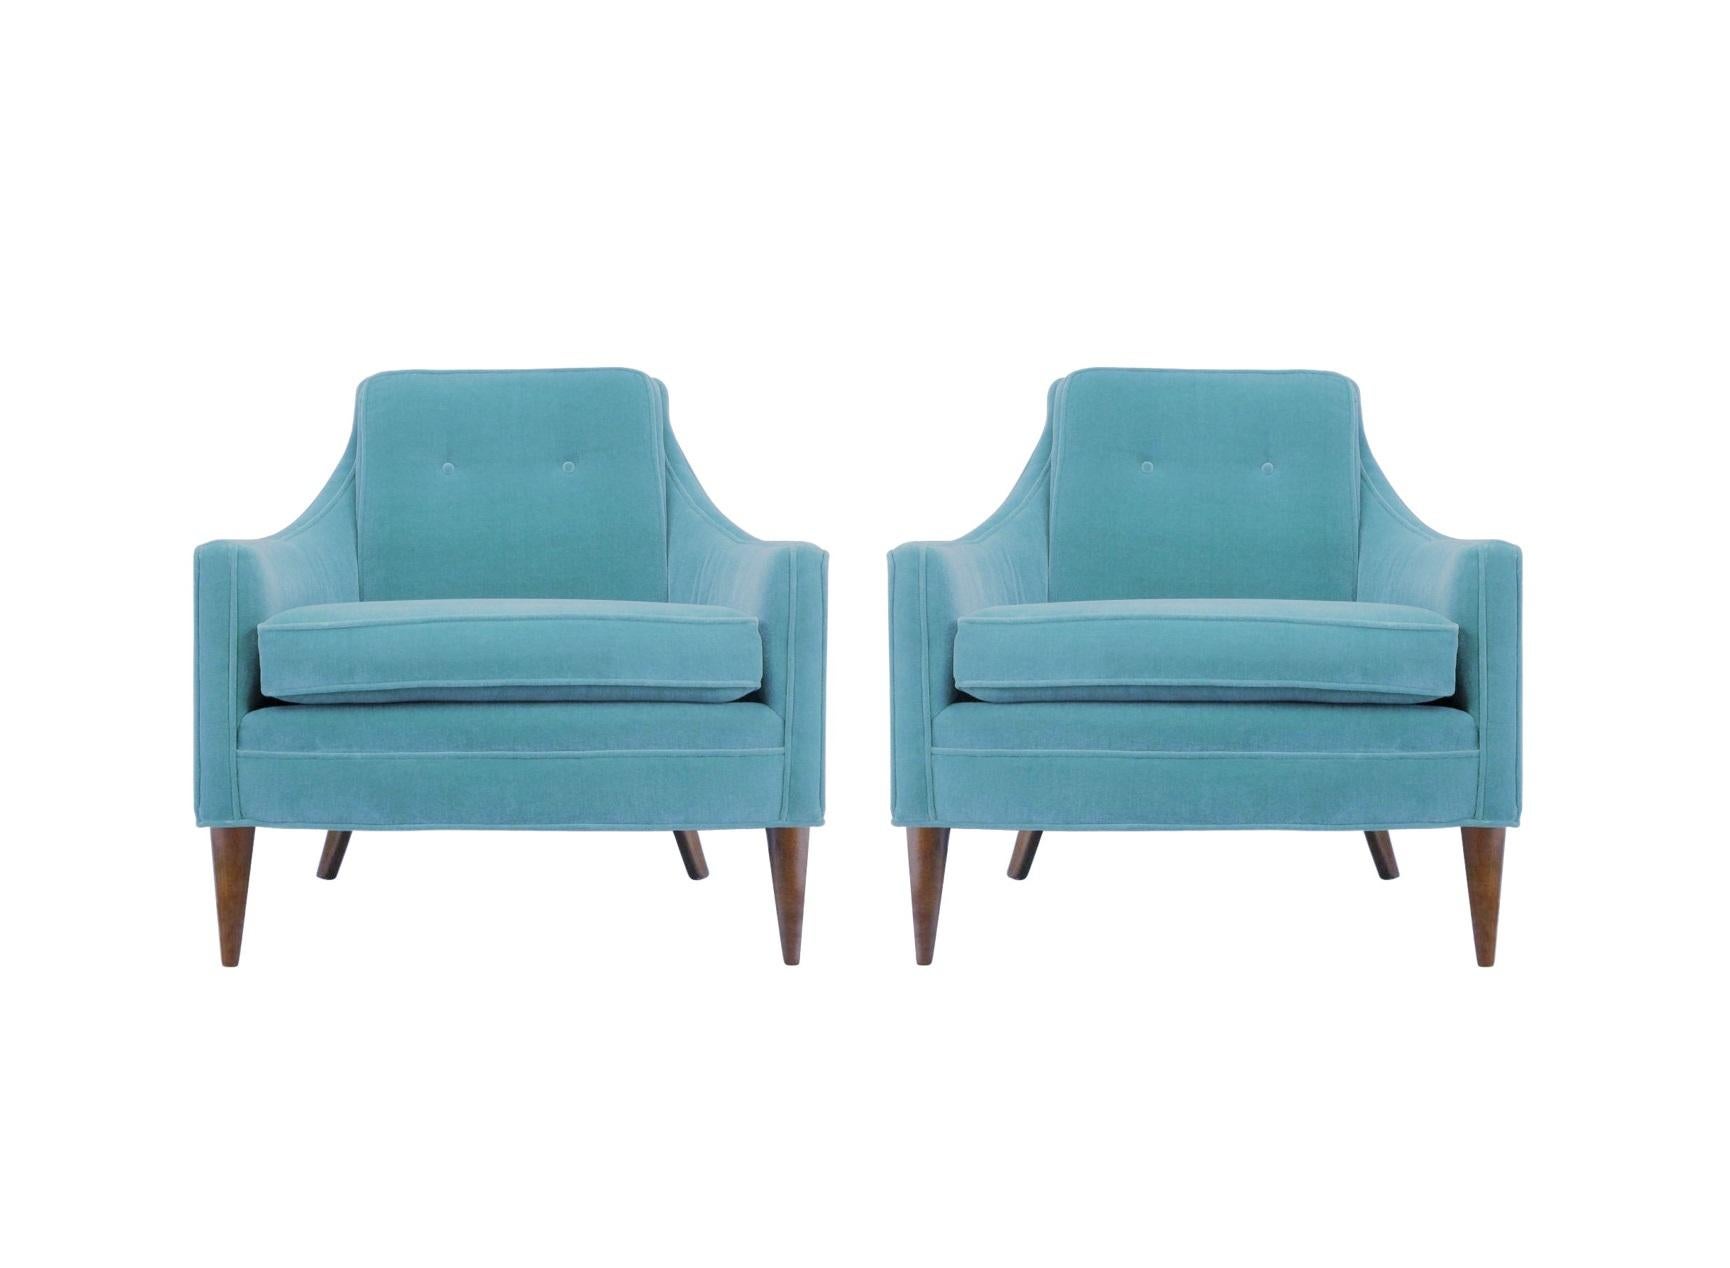 Ne vous contentez pas de chaises longues. Ces chaises étonnantes sont l'incarnation du confort et du style avec un design transitionnel à la pointe de la tendance ne vous décevra pas. Incorporant des lignes classiques avec une silhouette épurée, la